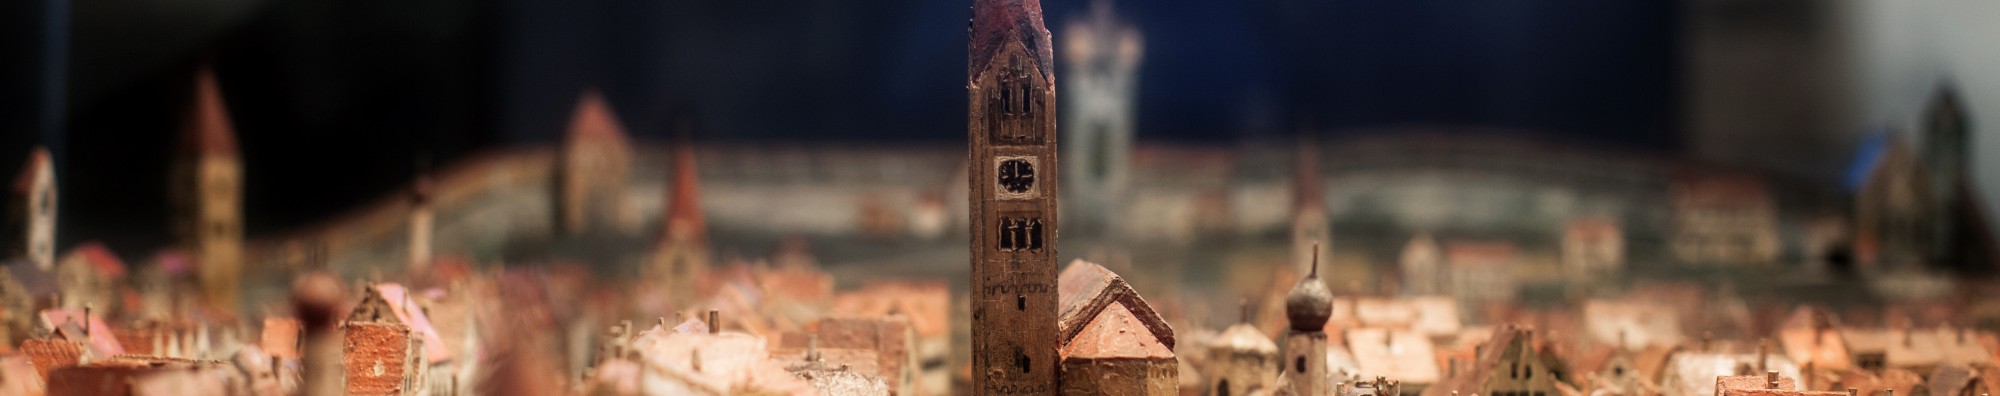 Miniaturmodell der Stadt Kaufbeuren. Im Zentrum der Kirchturm der Martinskirche. 